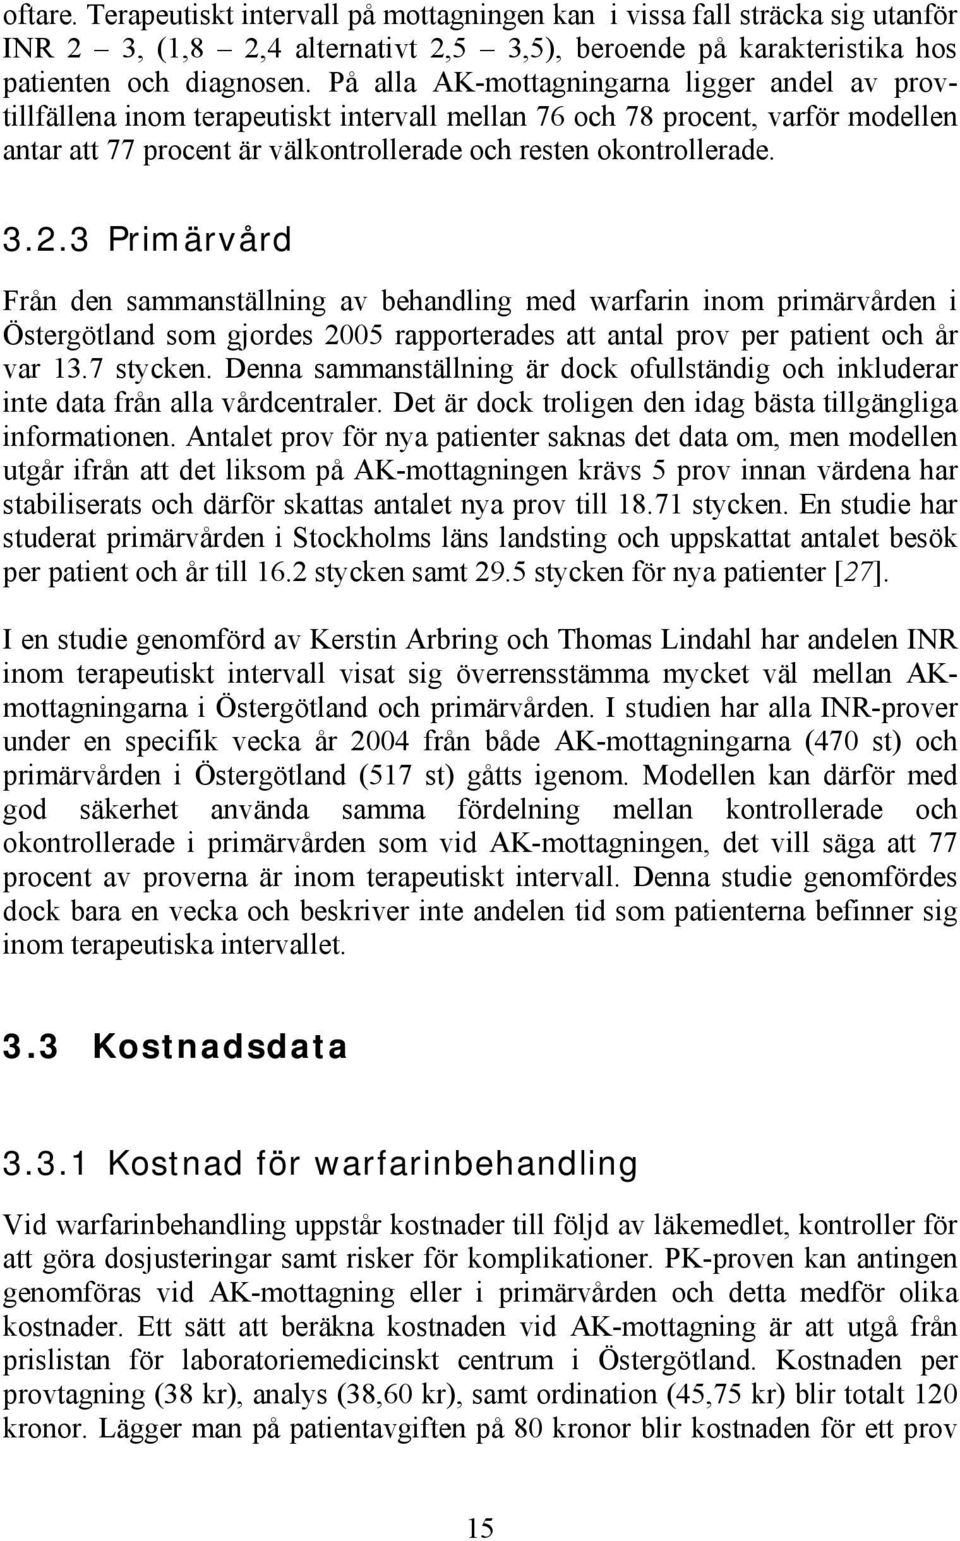 3 Primärvård Från den sammanställning av behandling med warfarin inom primärvården i Östergötland som gjordes 2005 rapporterades att antal prov per patient och år var 13.7 stycken.